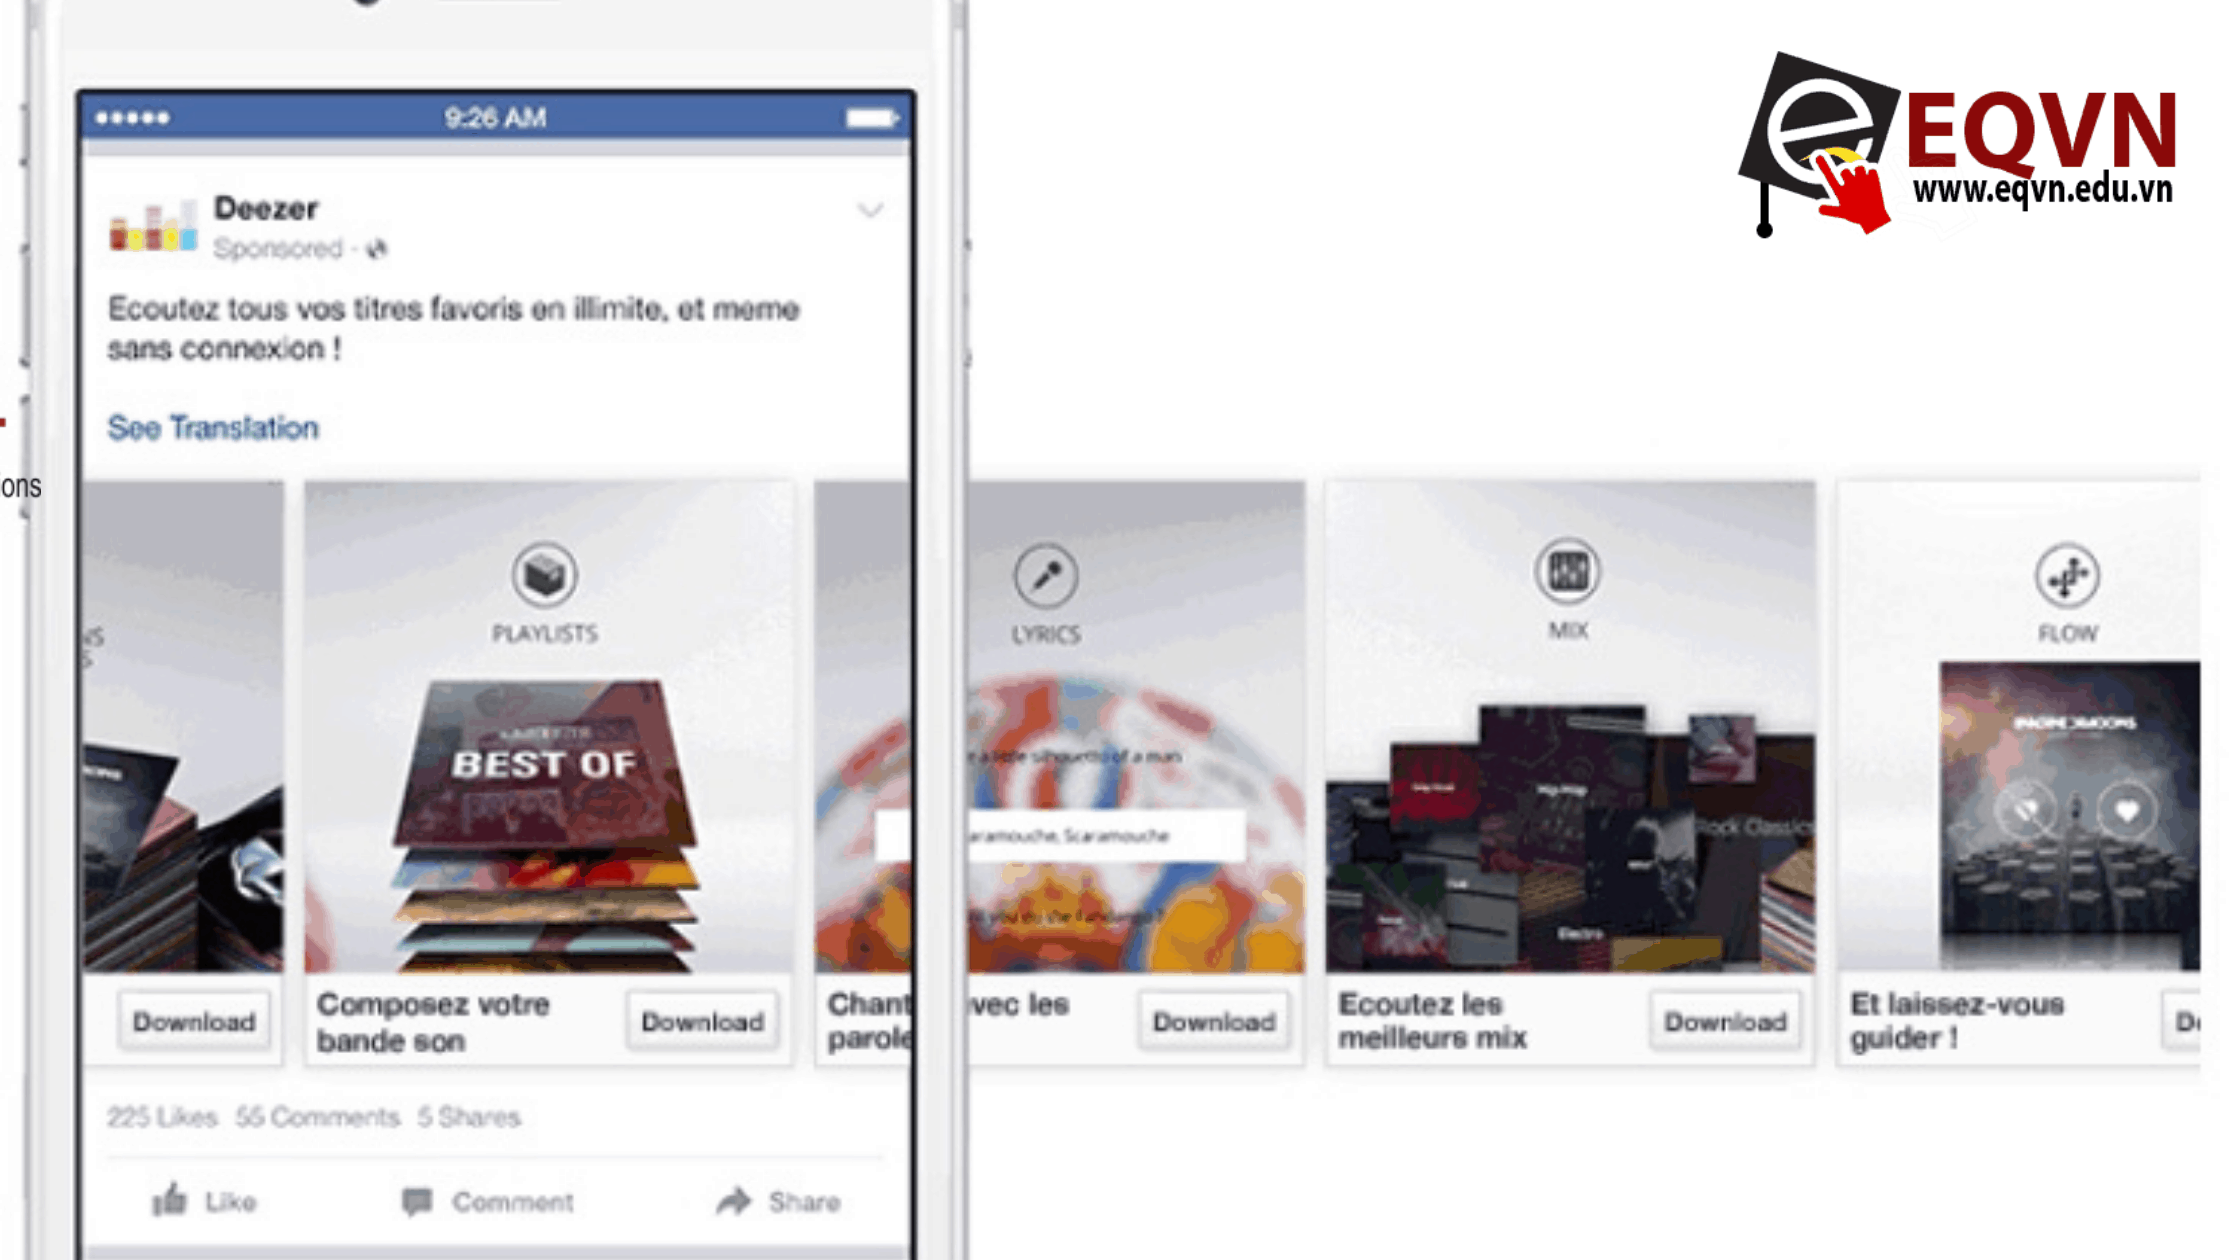 Giới thiệu về hình thức quảng cáo carousel trên Facebook